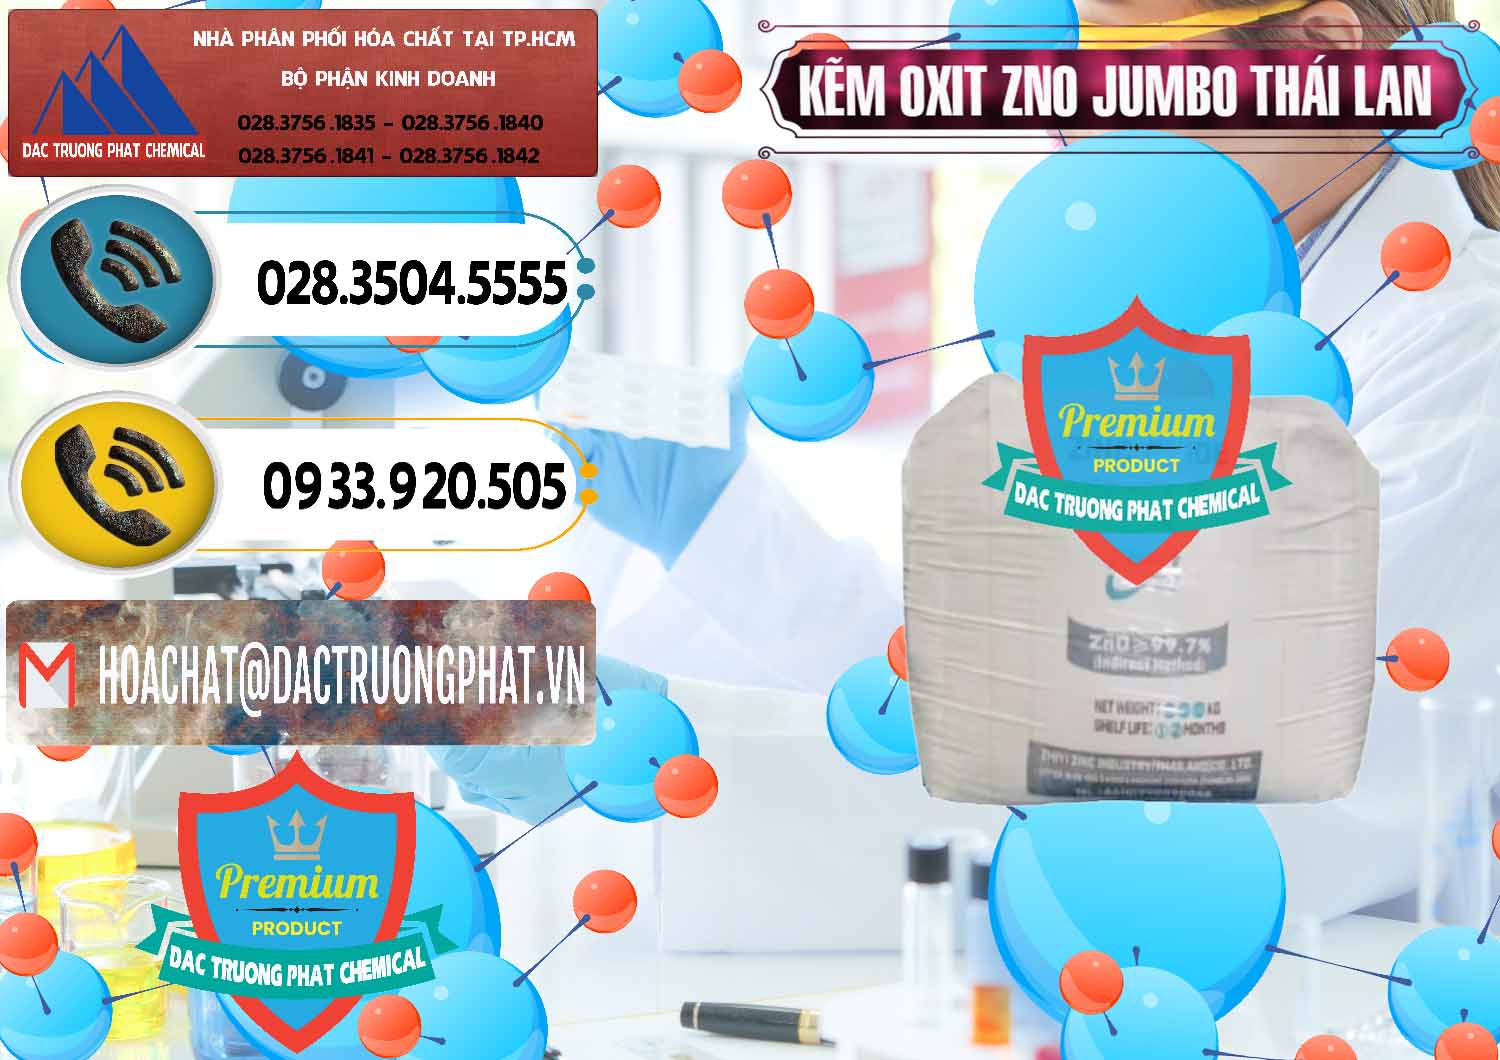 Chuyên bán _ phân phối Zinc Oxide - Bột Kẽm Oxit ZNO Jumbo Bành Thái Lan Thailand - 0370 - Công ty chuyên phân phối ( bán ) hóa chất tại TP.HCM - hoachatdetnhuom.vn